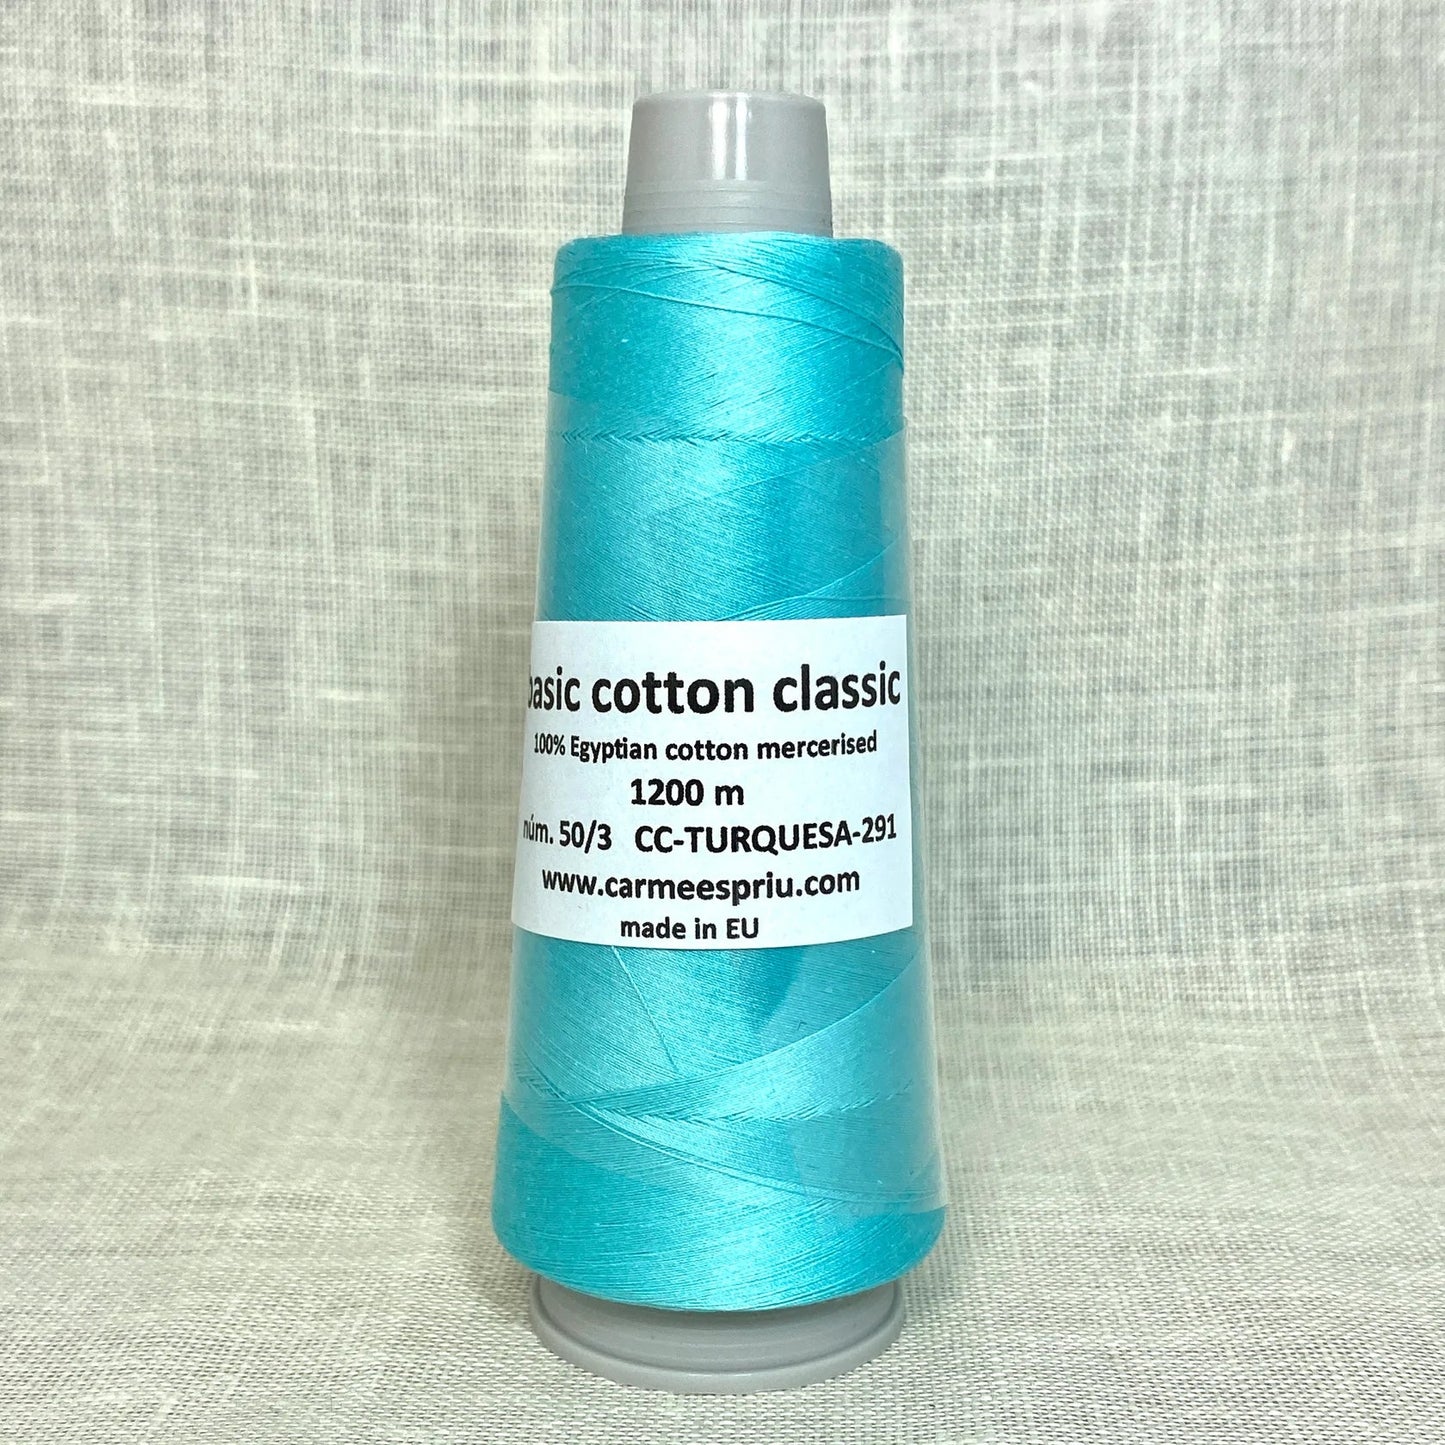 Basic cotton classic nº 291